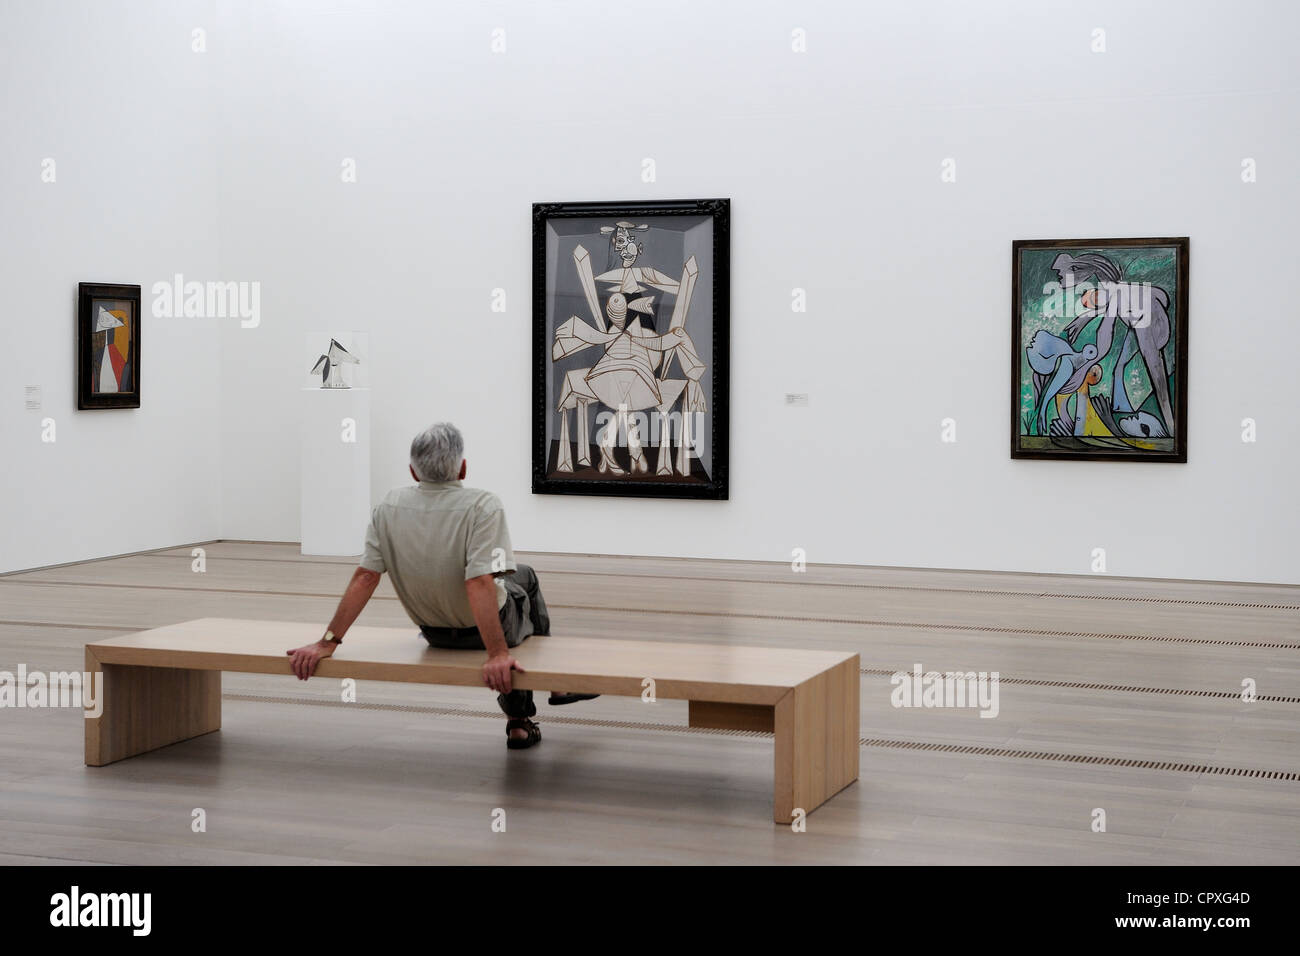 Switzerland, Basel, Beyeler Foundation, the Picasso room Stock Photo